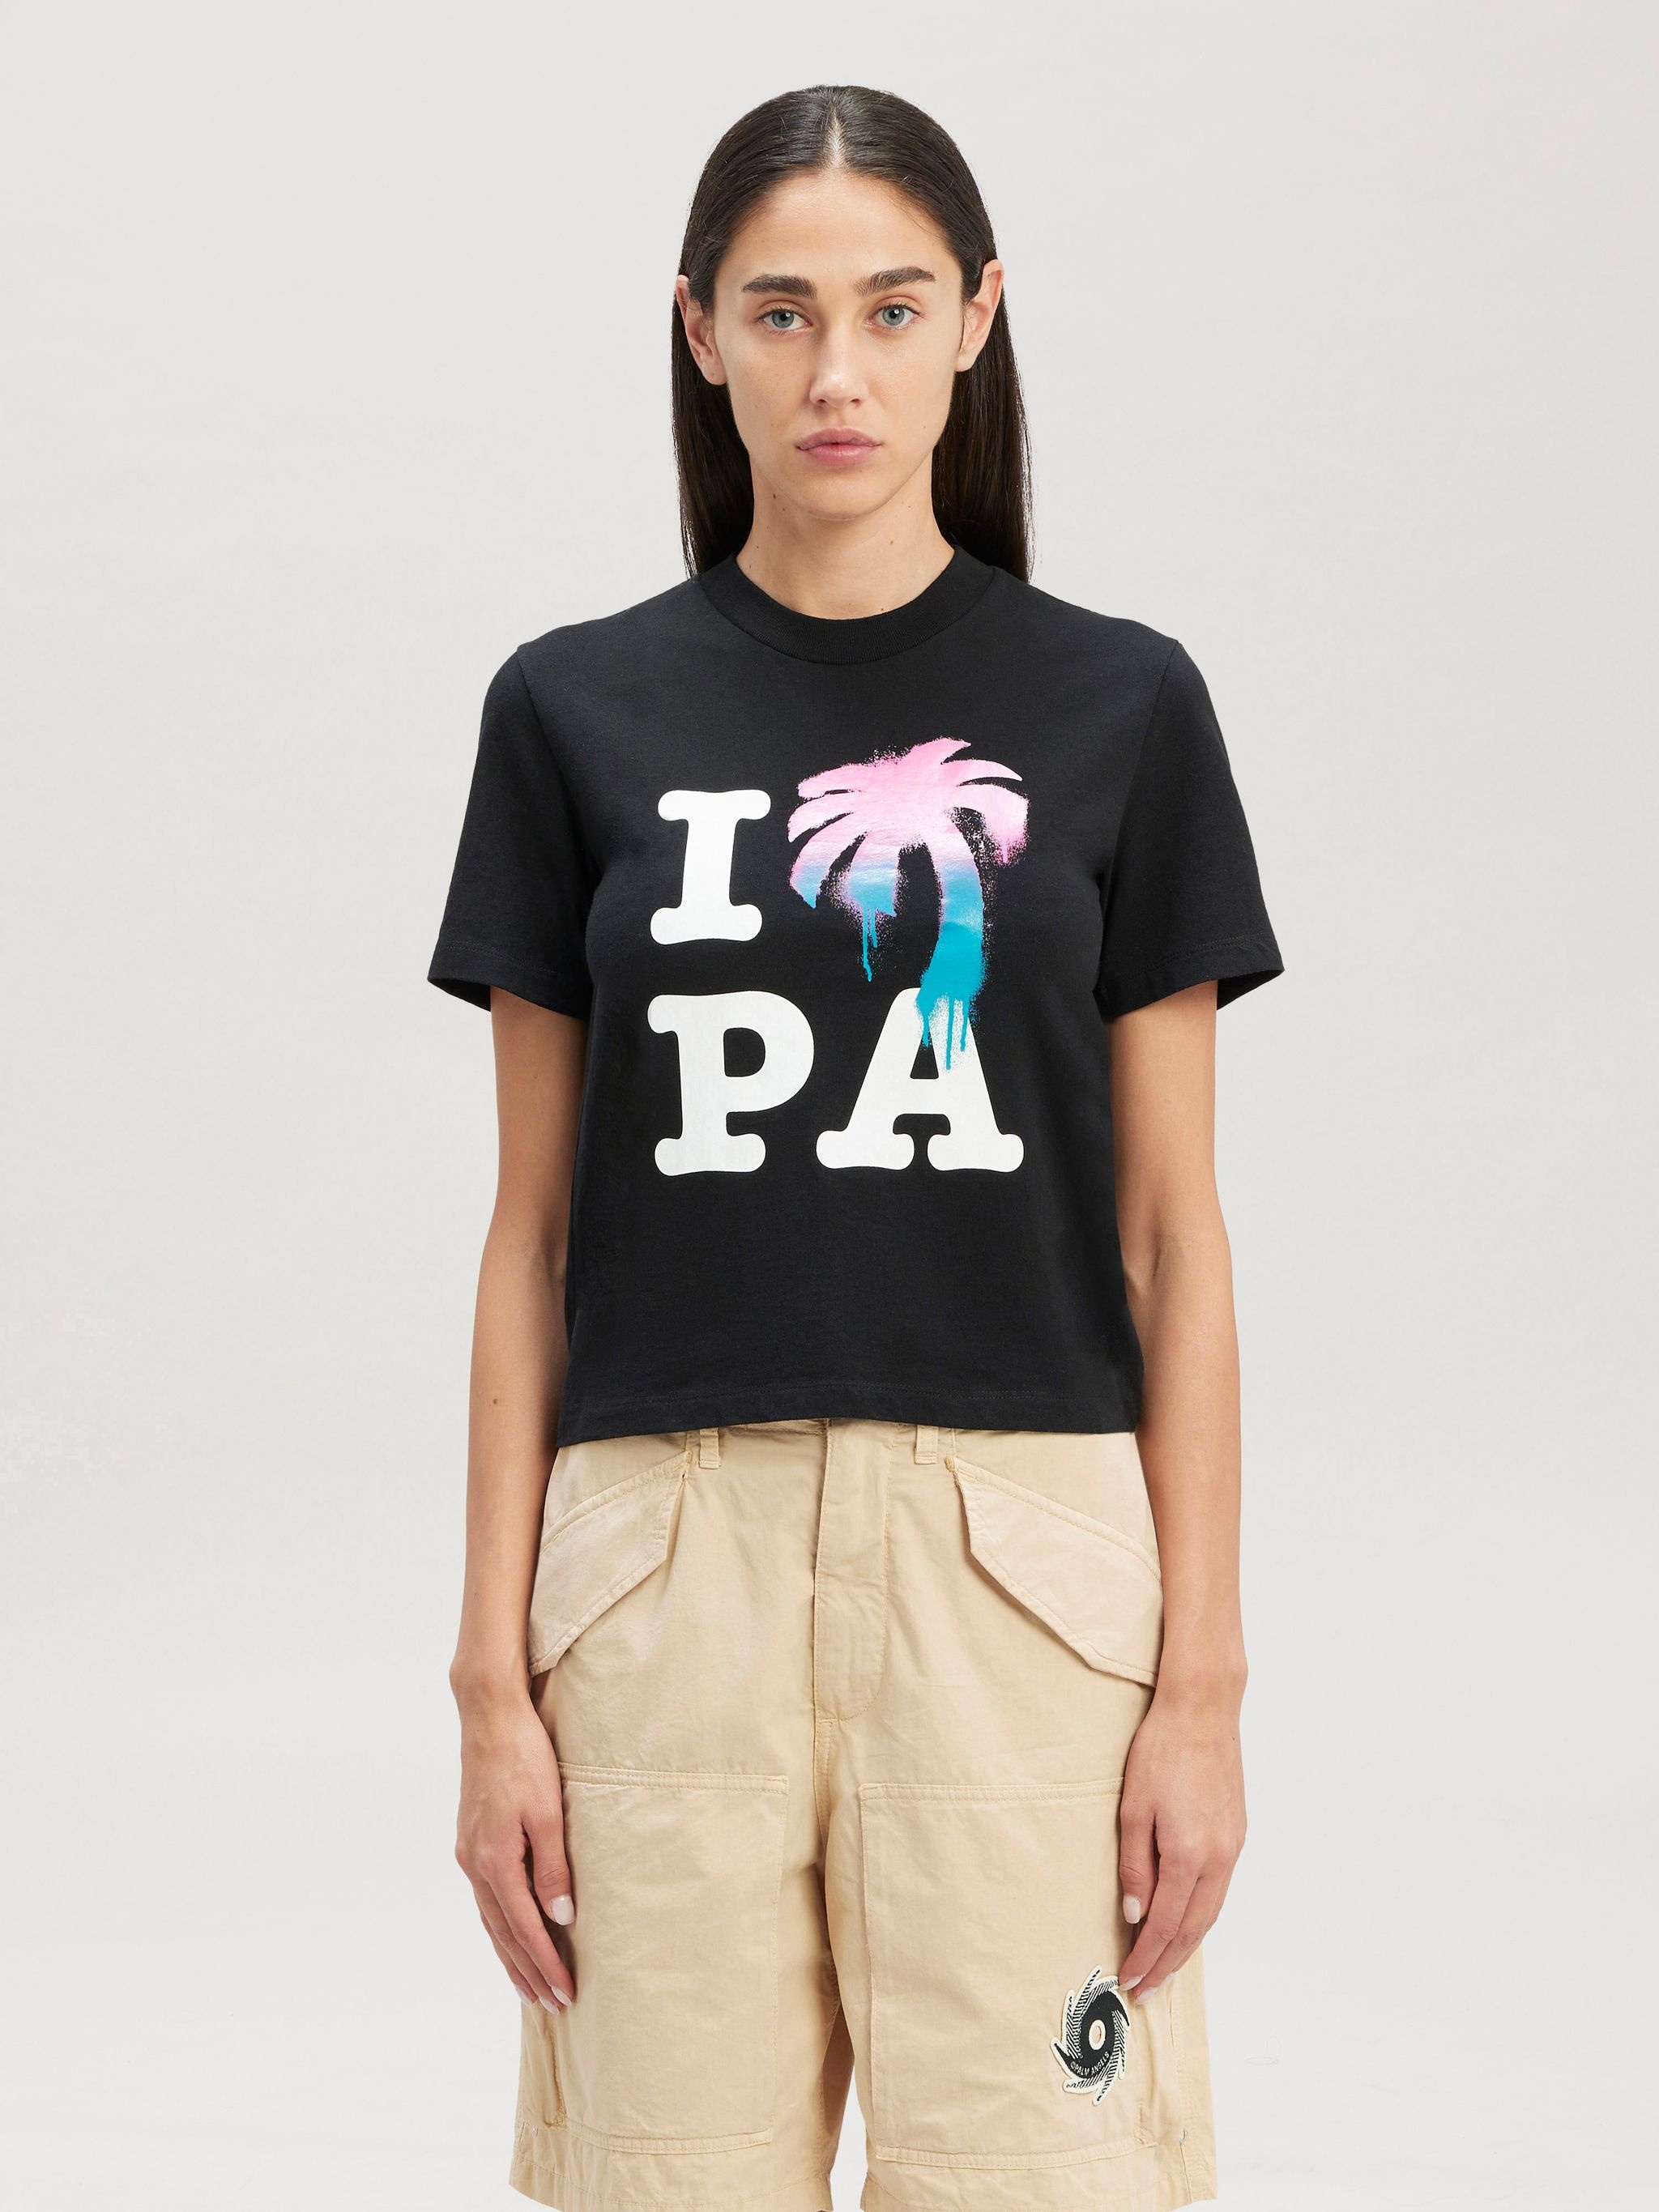 I Love Pa Slim T-shirt - 3